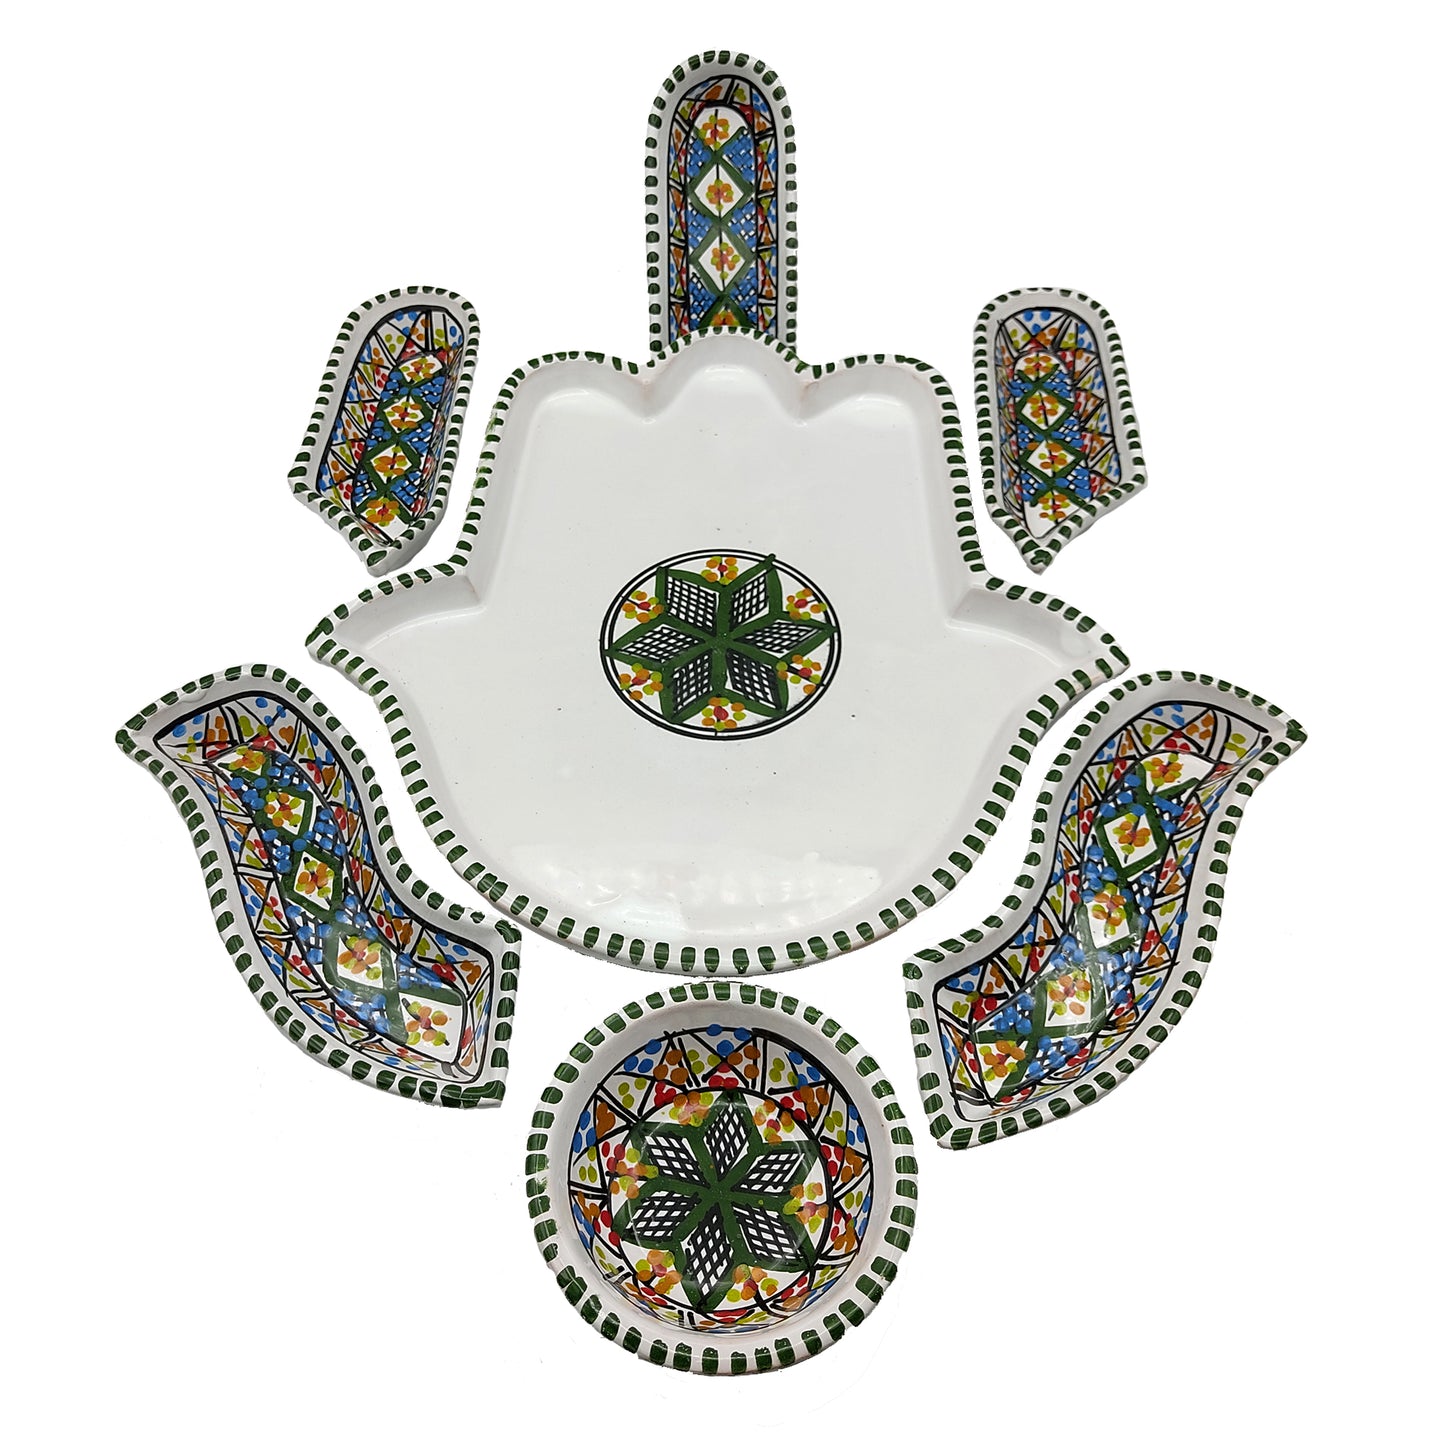 Antipastiera Piatto Etnico Ceramica Terracotta Tunisina Marocchina 2611201213